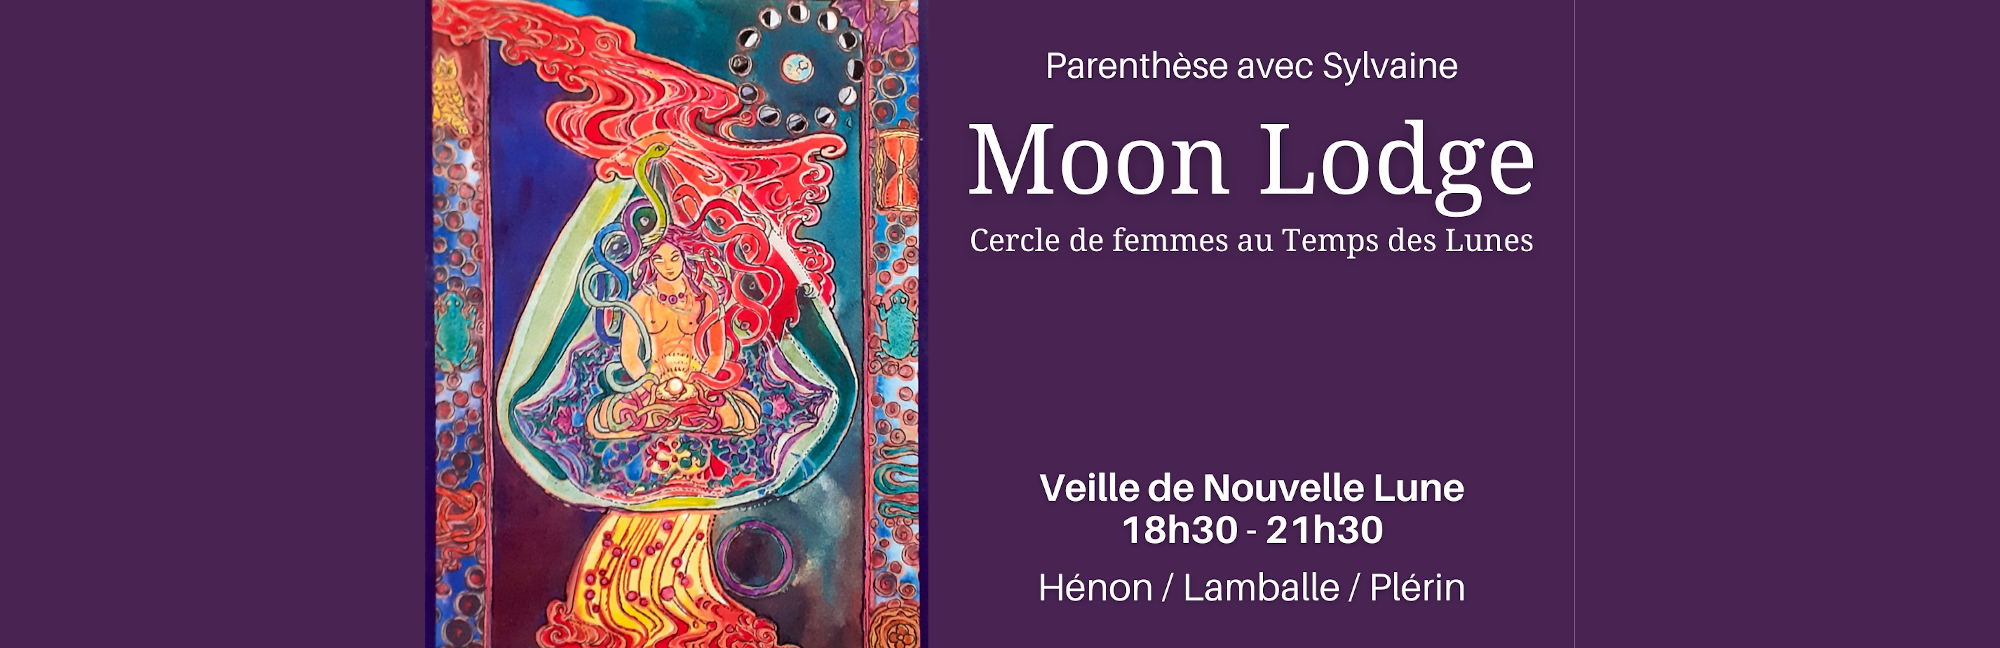 cercle-femme-moon-lodge-temps-lune-cycle-menstruel-saint-brieuc-lamballe-cotes-armor-bretagne.png